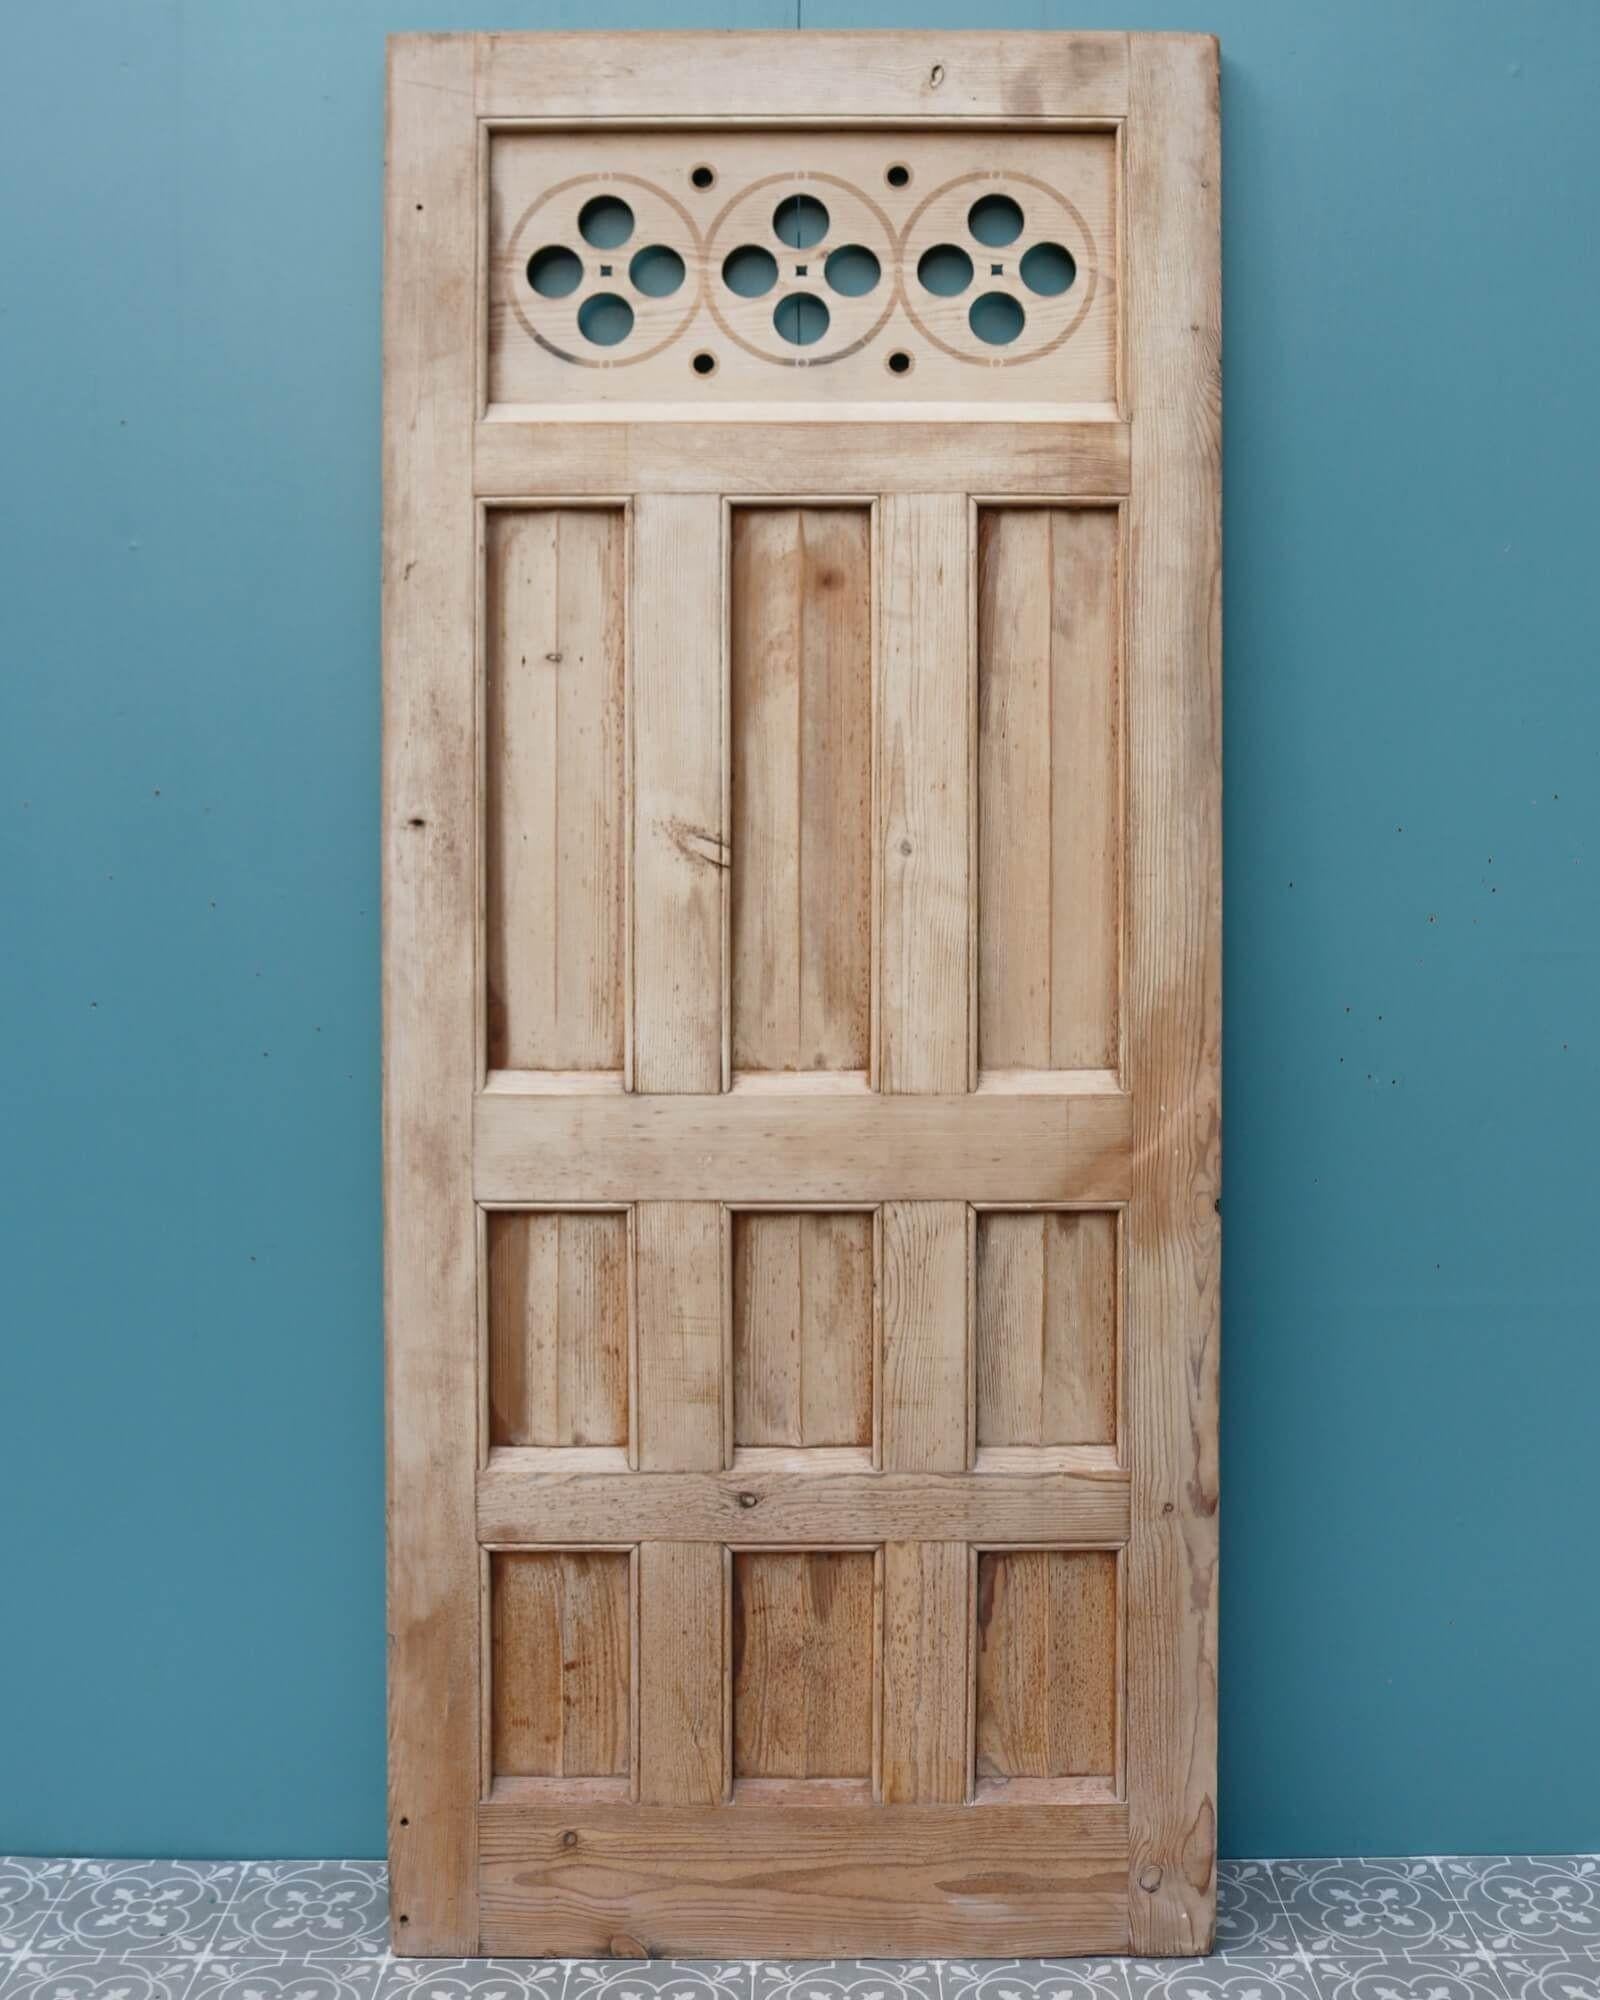 Dieses aus einer englischen Kirche stammende Wandpaneel oder diese Tür im kirchlichen Stil hat ein ungewöhnliches Design, das in jeder Umgebung einen Blickfang darstellt. Es ist aus Kiefernholz gefertigt und hat eine vertikale Vertäfelung unter